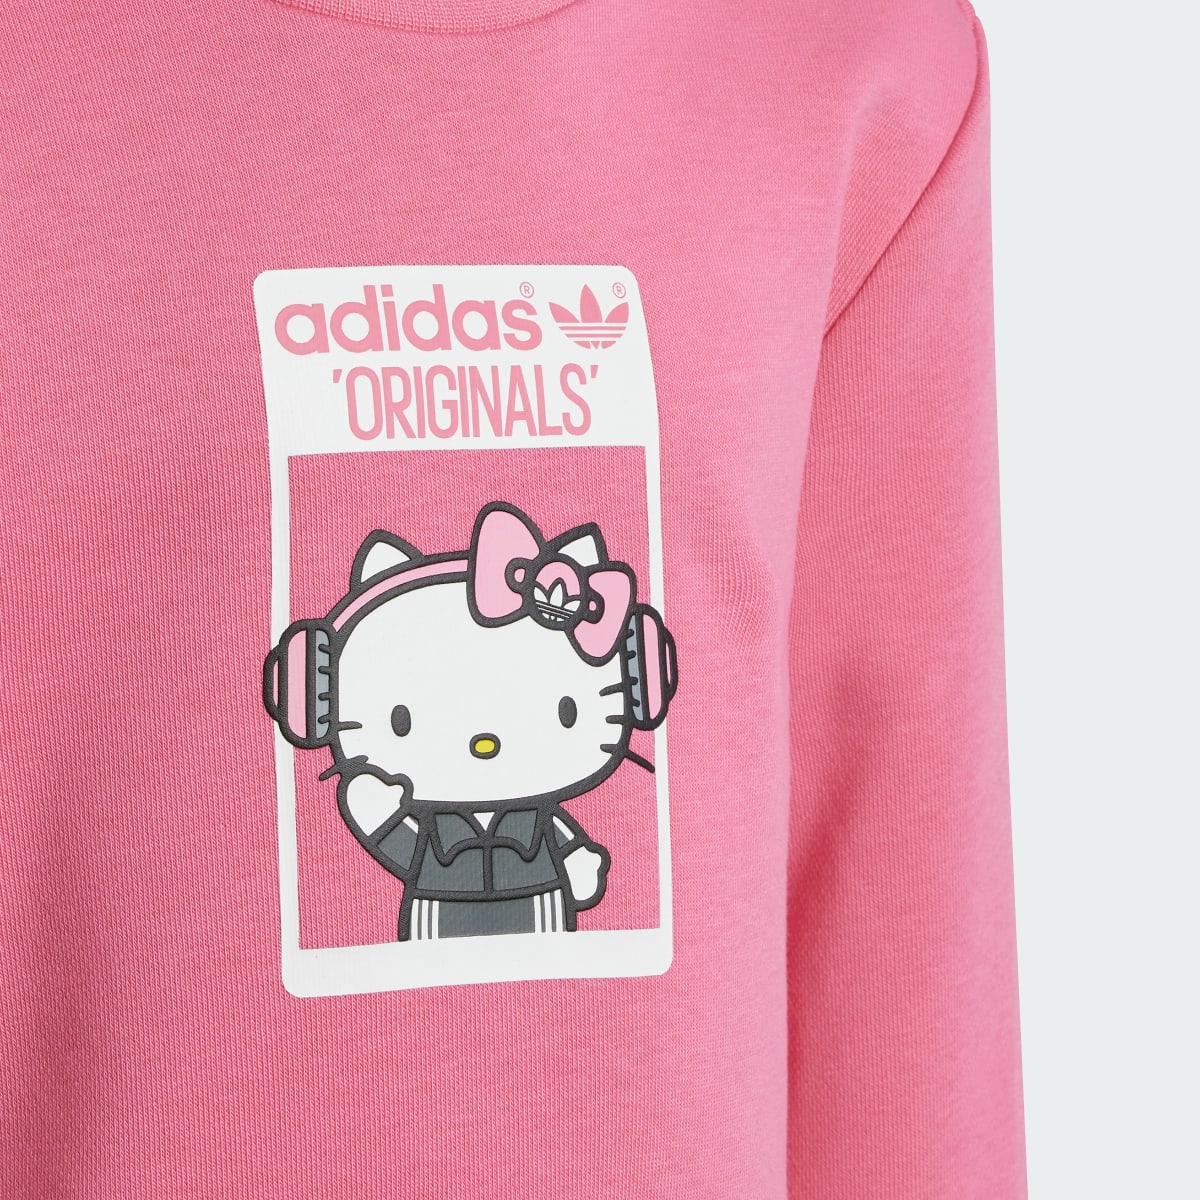 Adidas Originals x Hello Kitty Eşofman Takımı. 7